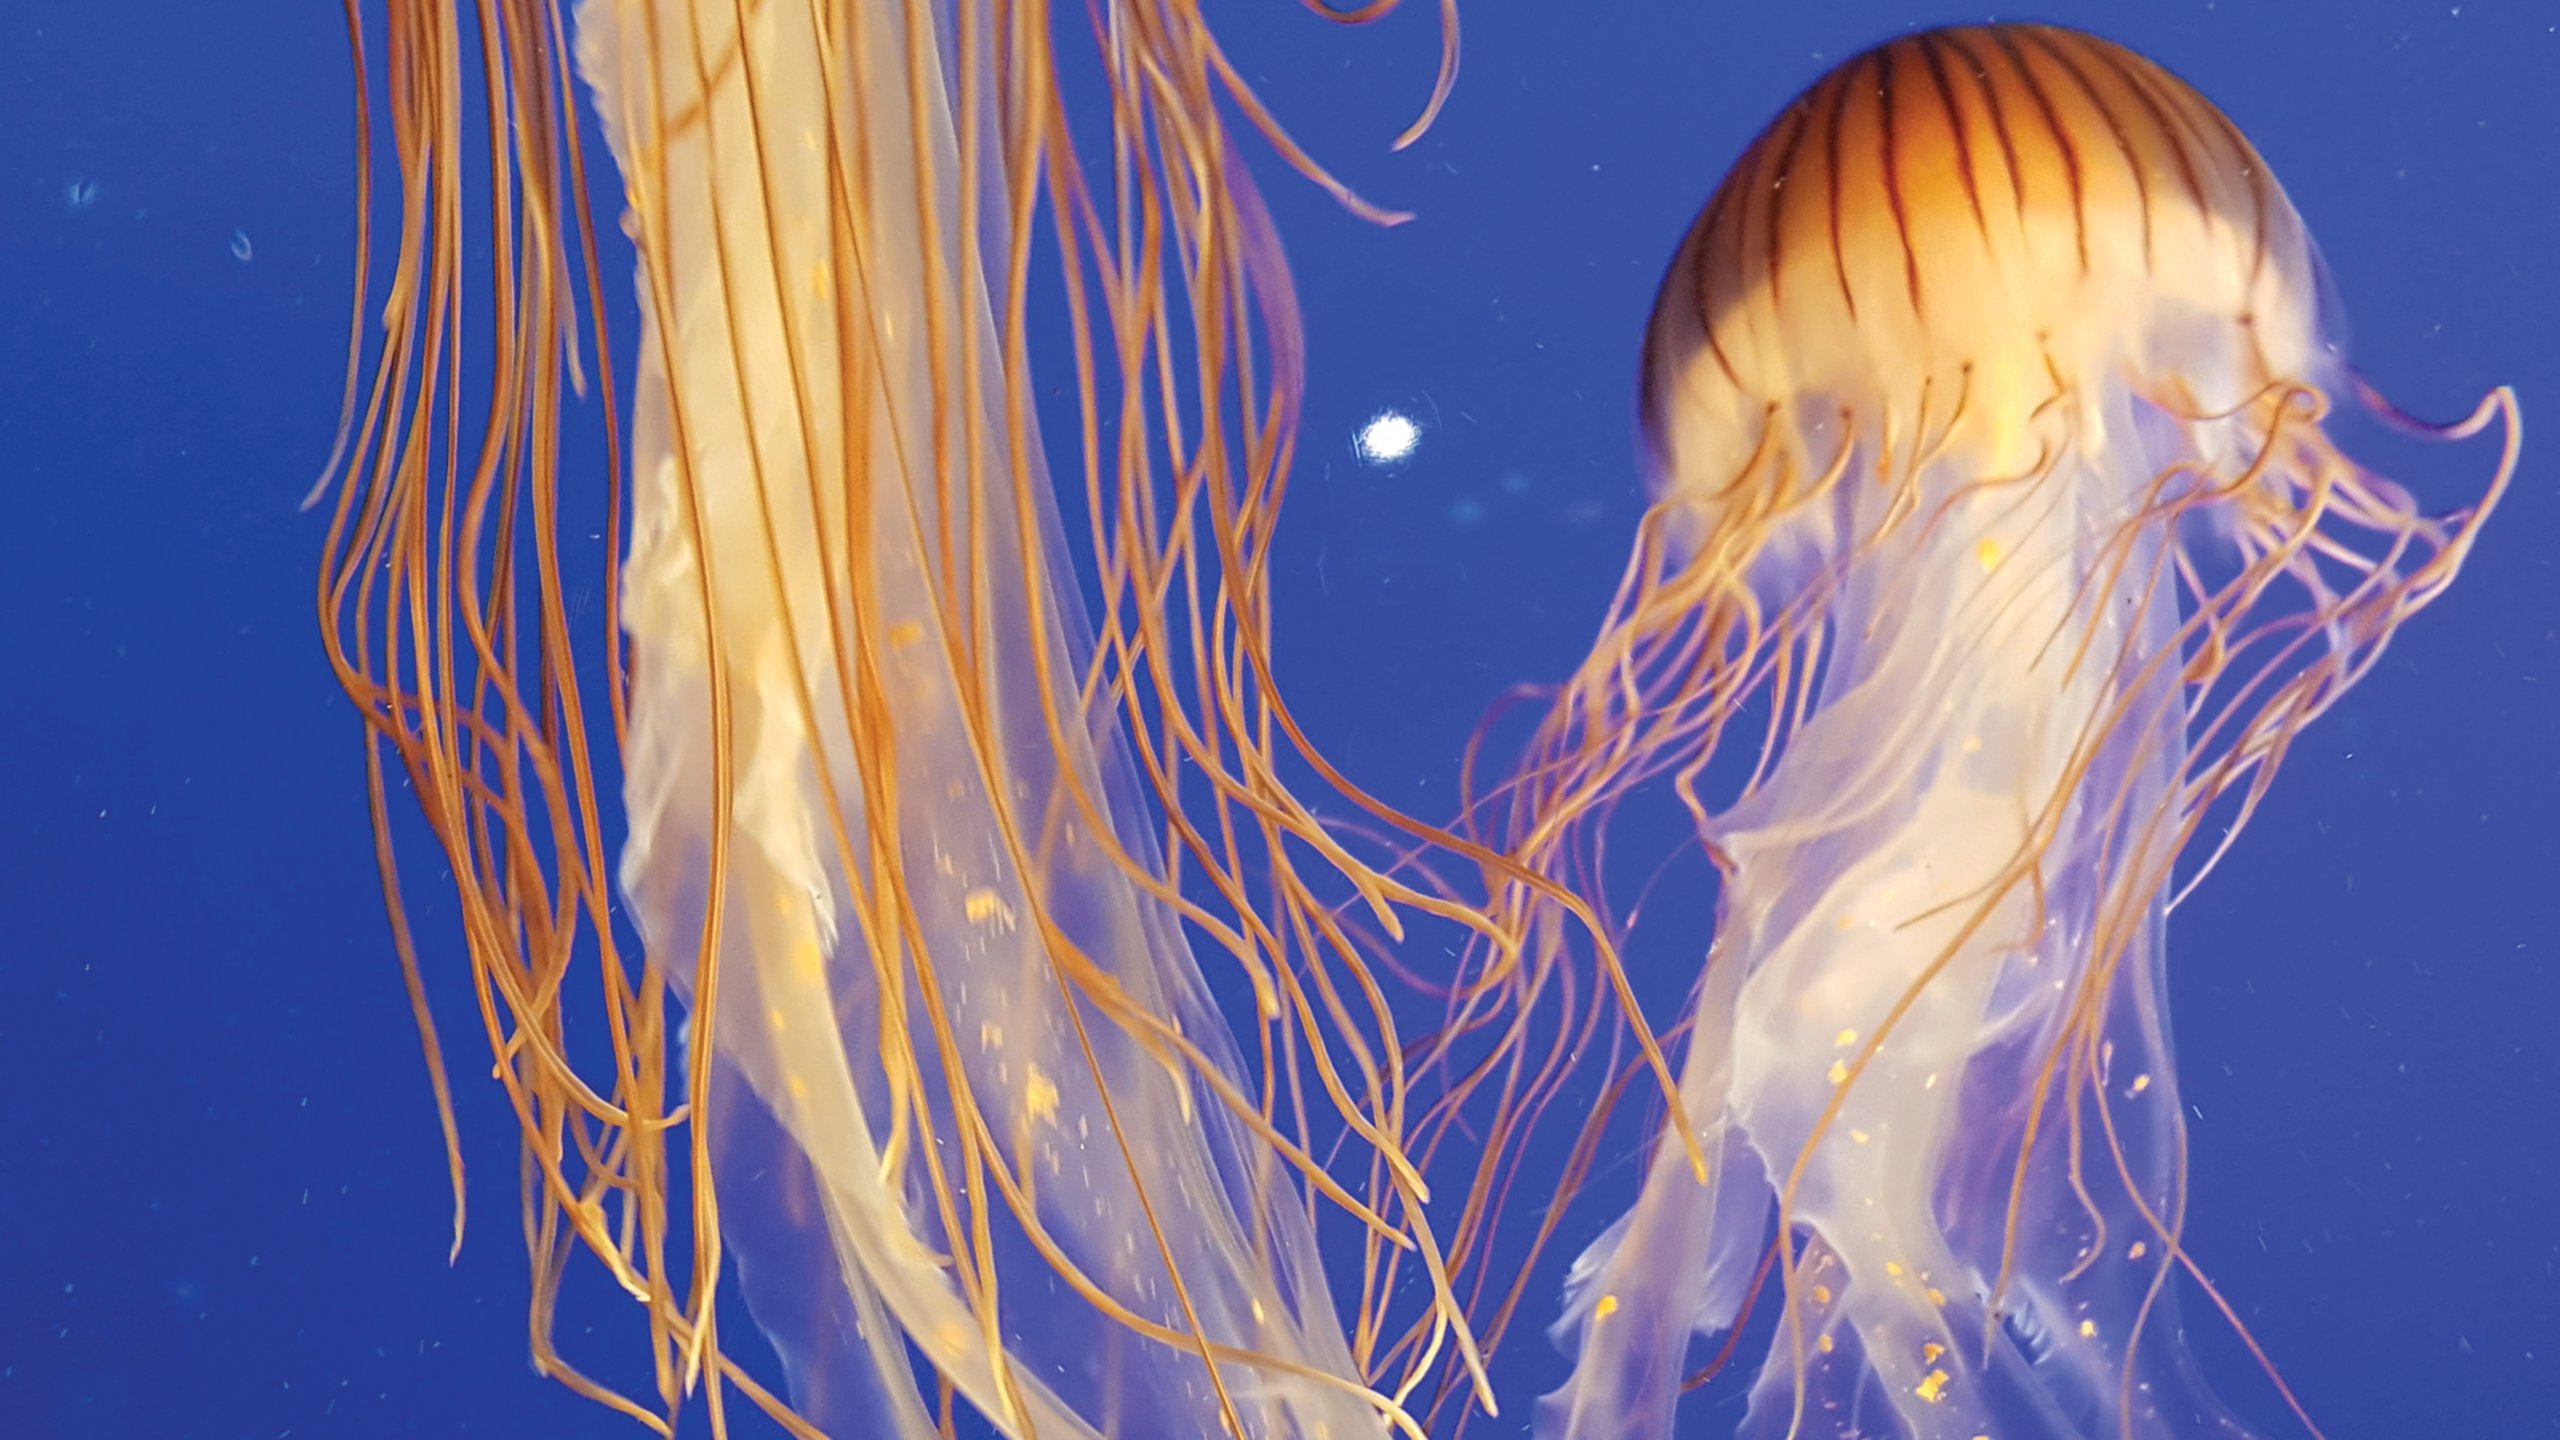 Orange jellyfish in blue ocean water